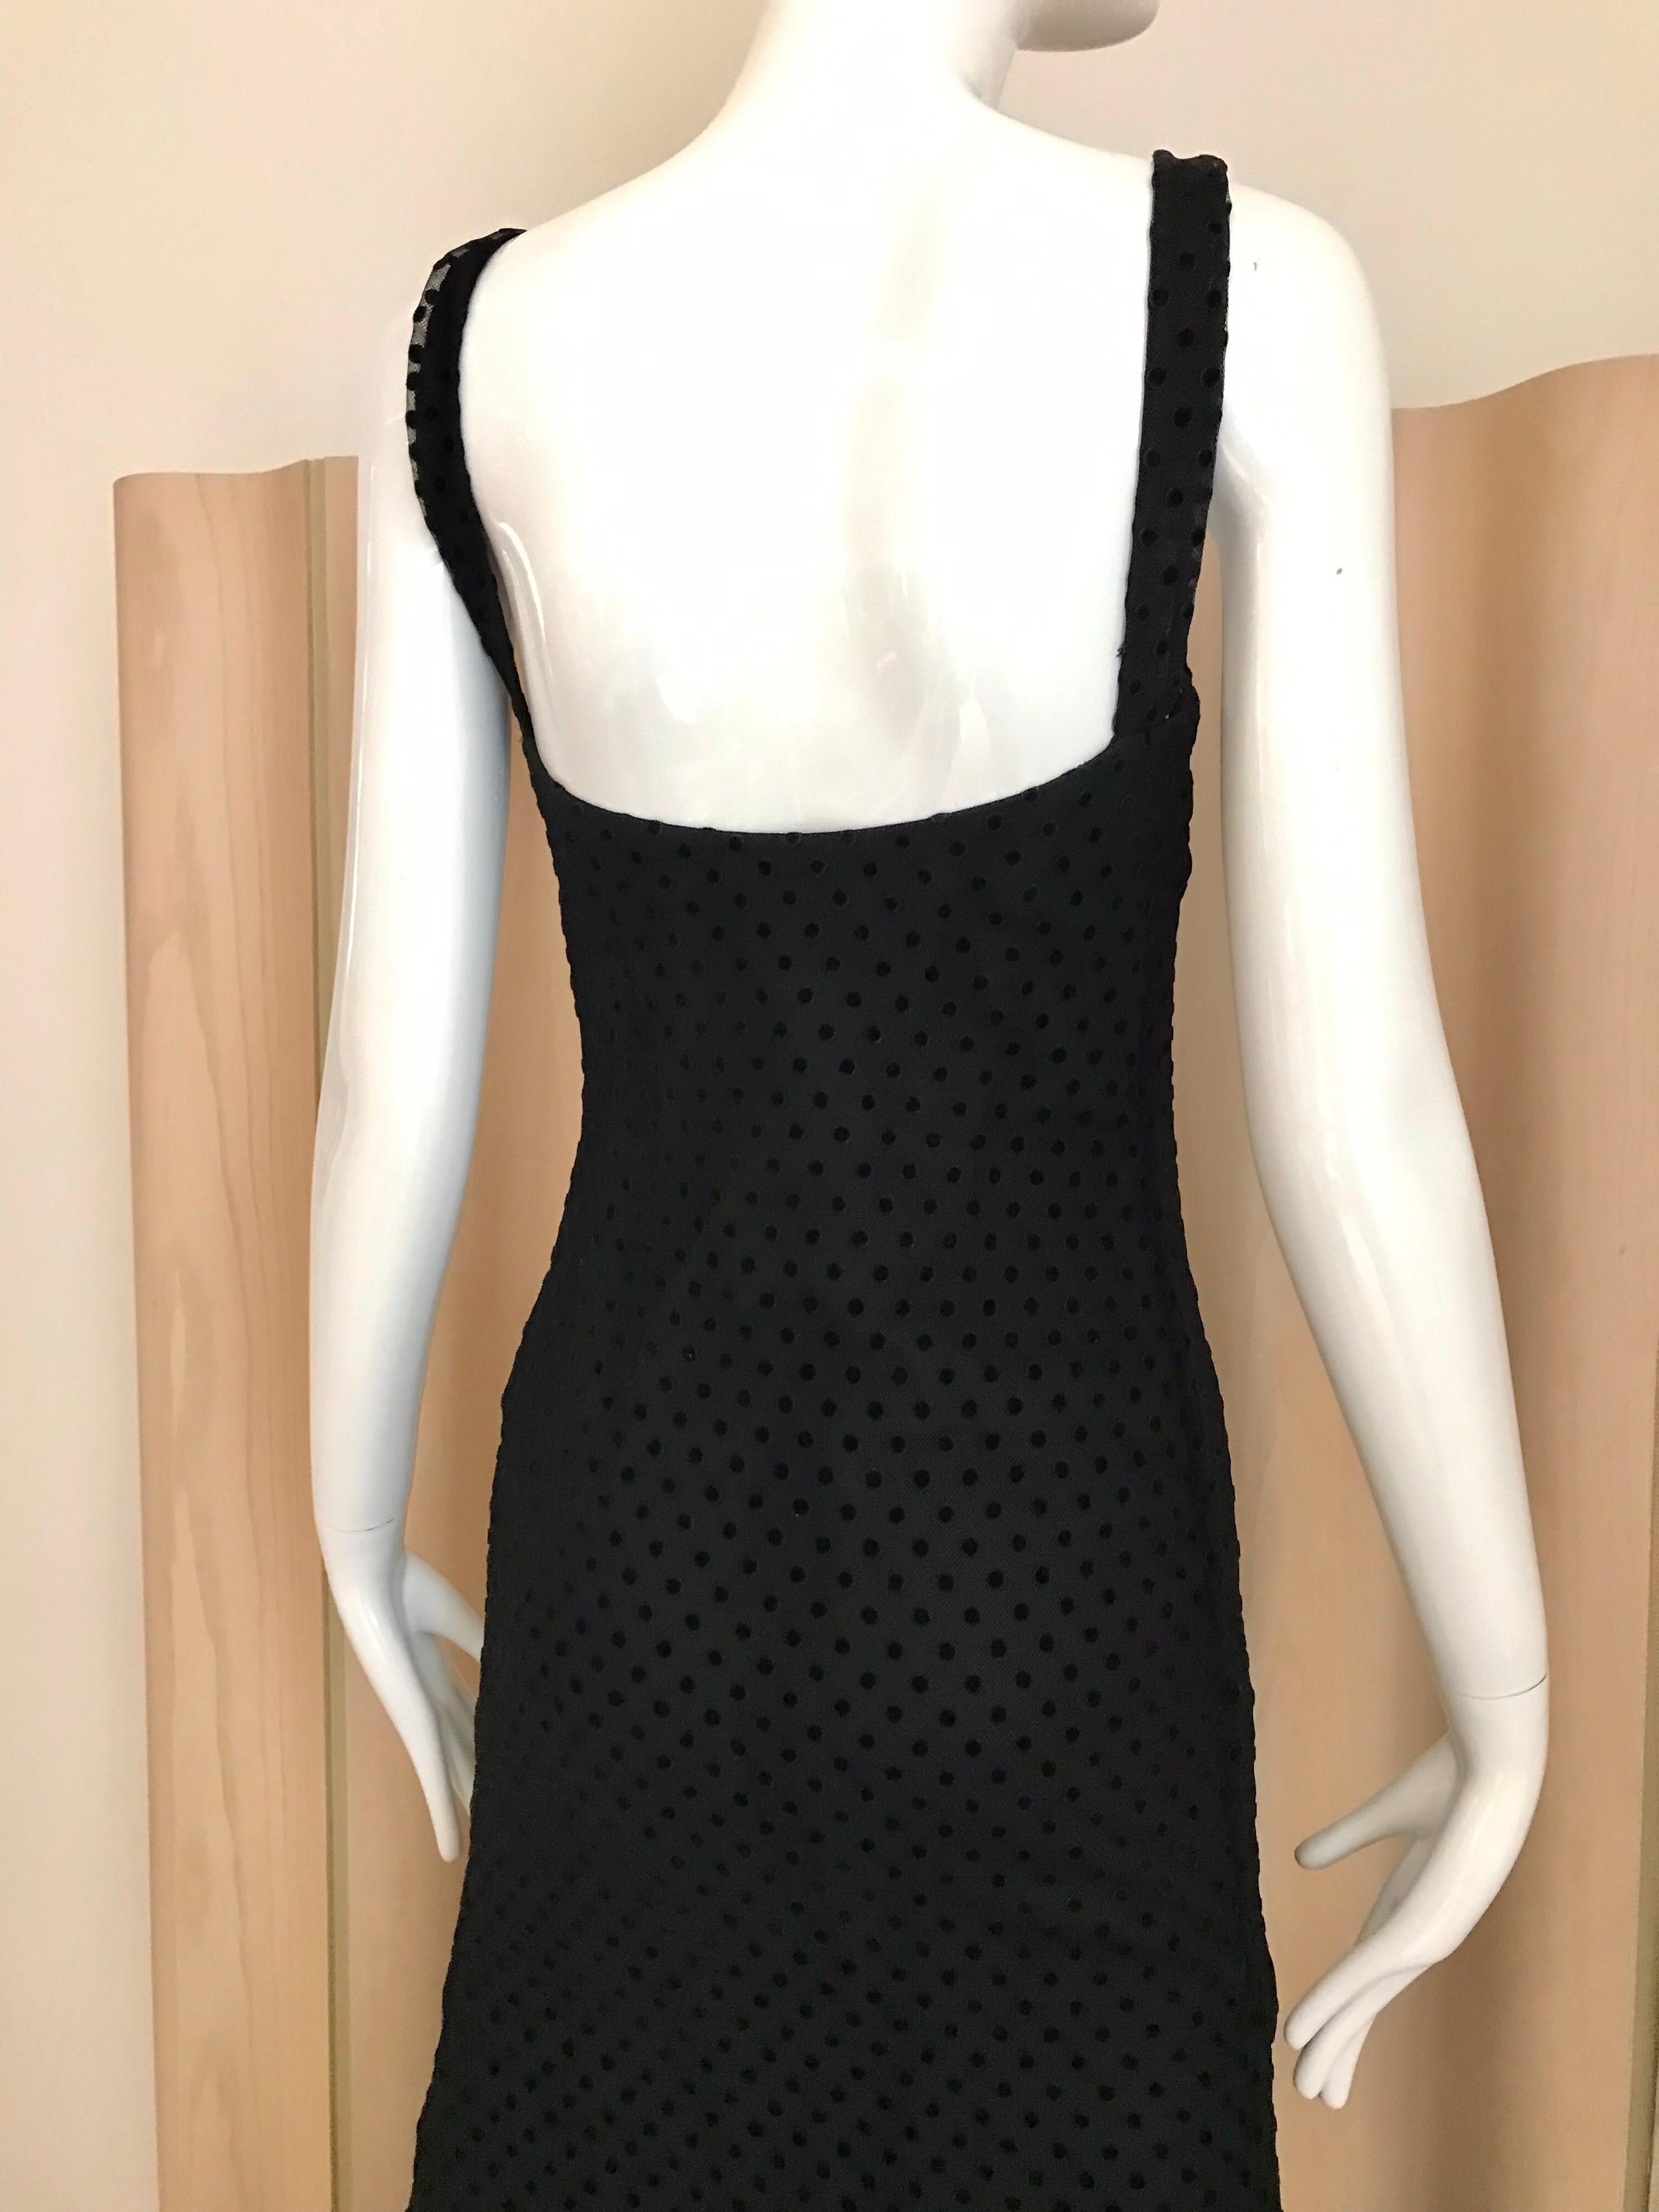 Christian Dior Black Net Dress with Velvet Dot Dress For Sale 2